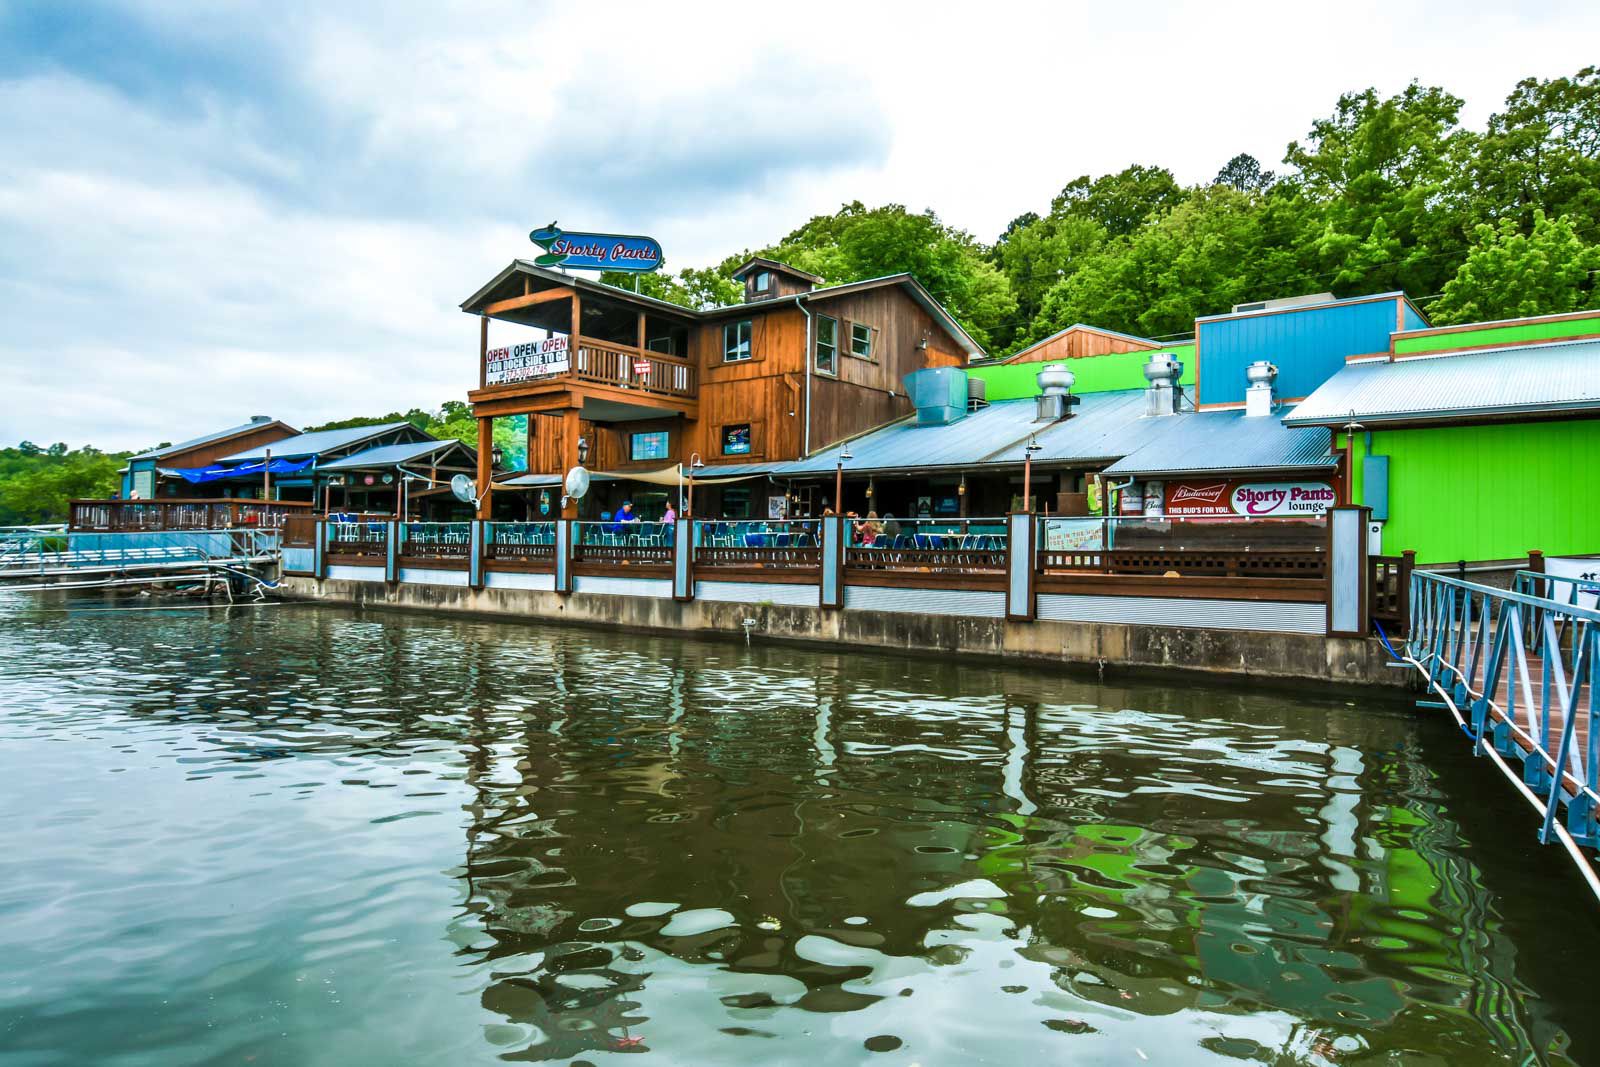 Shorty Pants Lounge: Where The Louisiana Bayou Meets Lake Of The Ozarks |  Flipboard